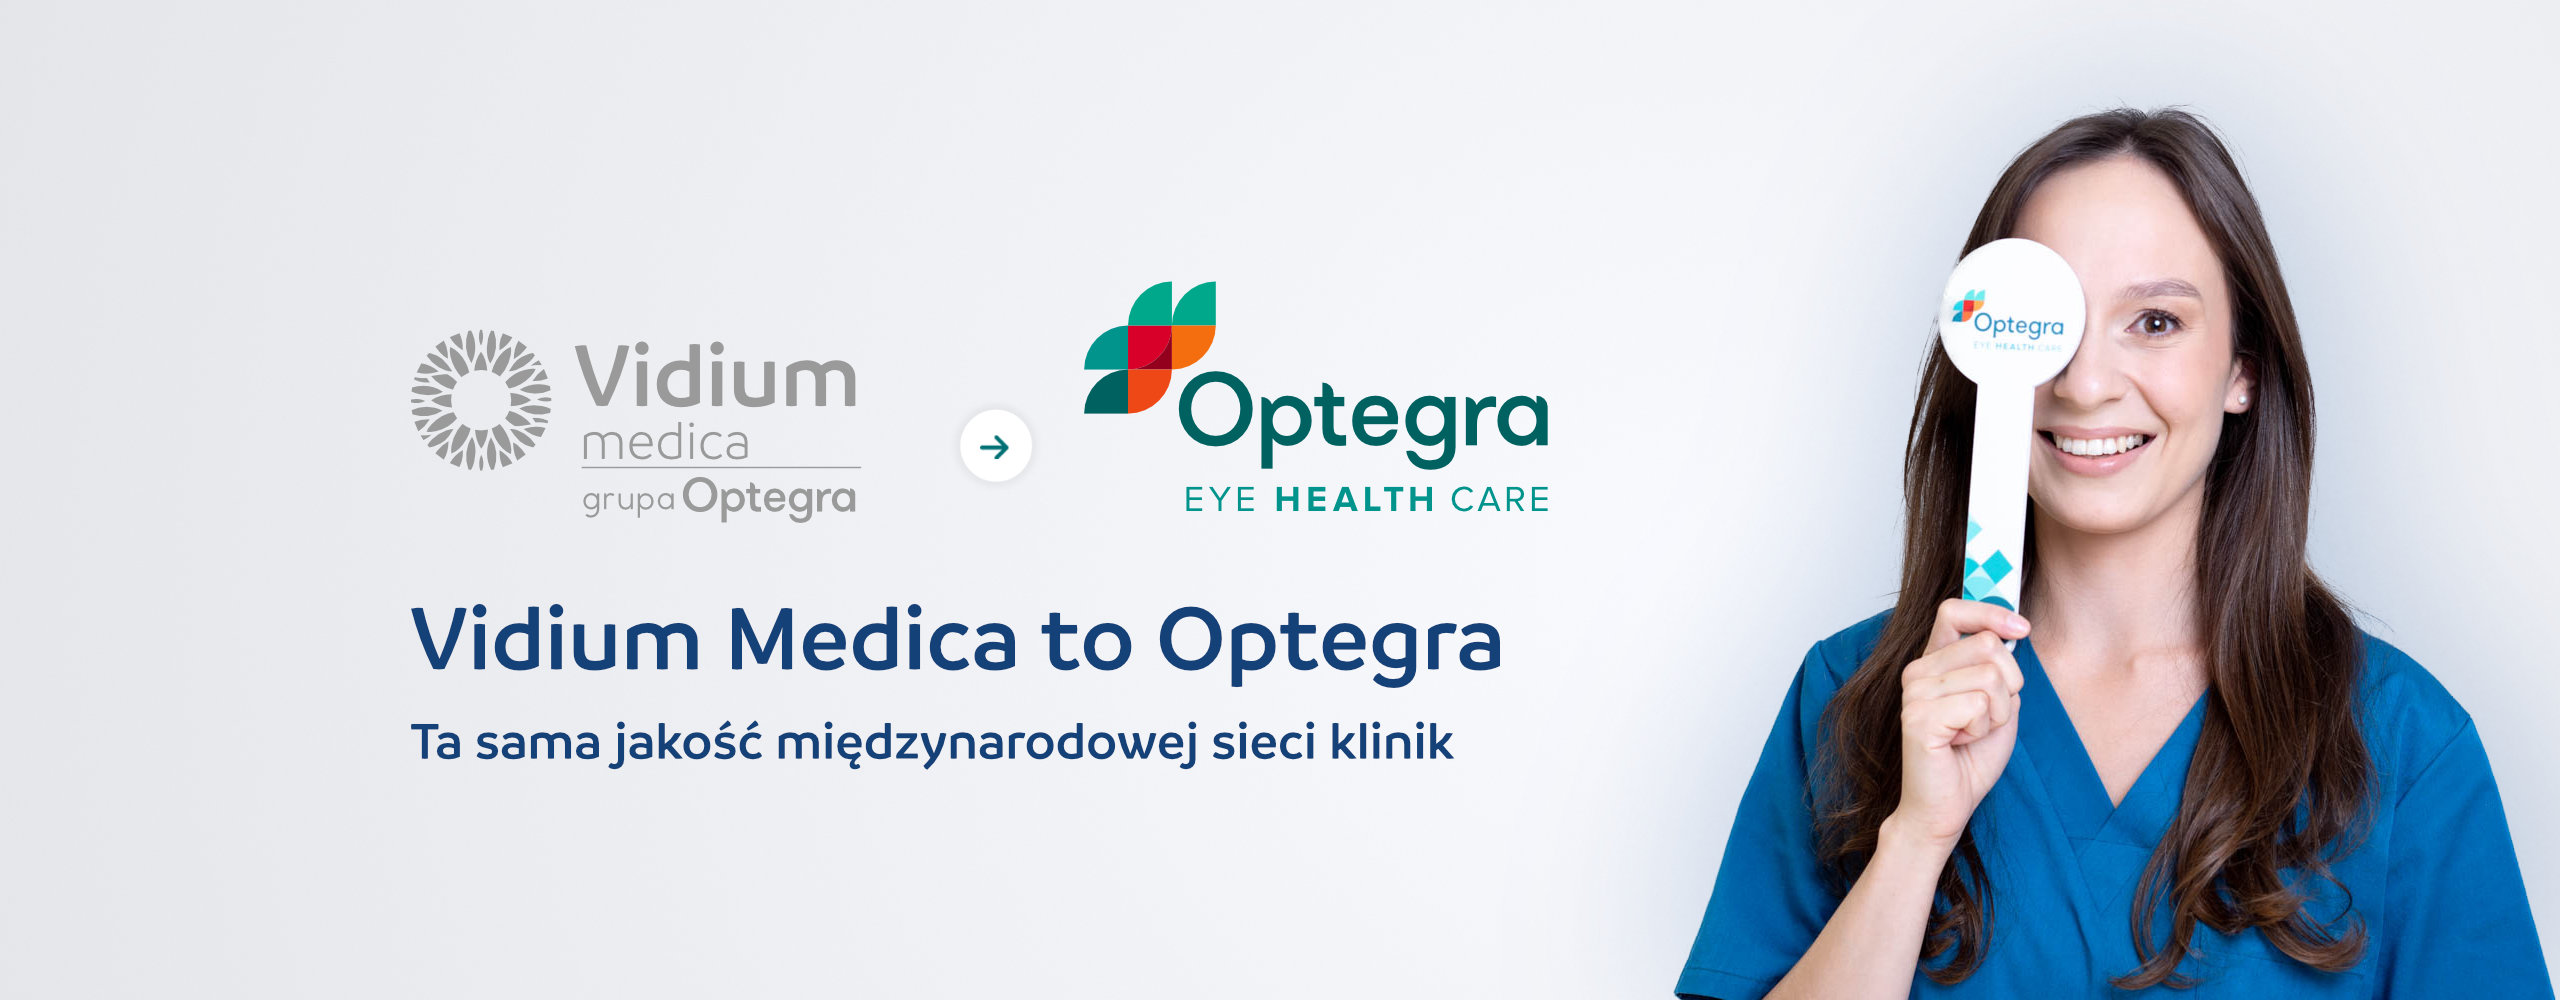 Klinika Okulistyczna Optegra Dawniej Vidium Medica Kraków Warszawa 8693